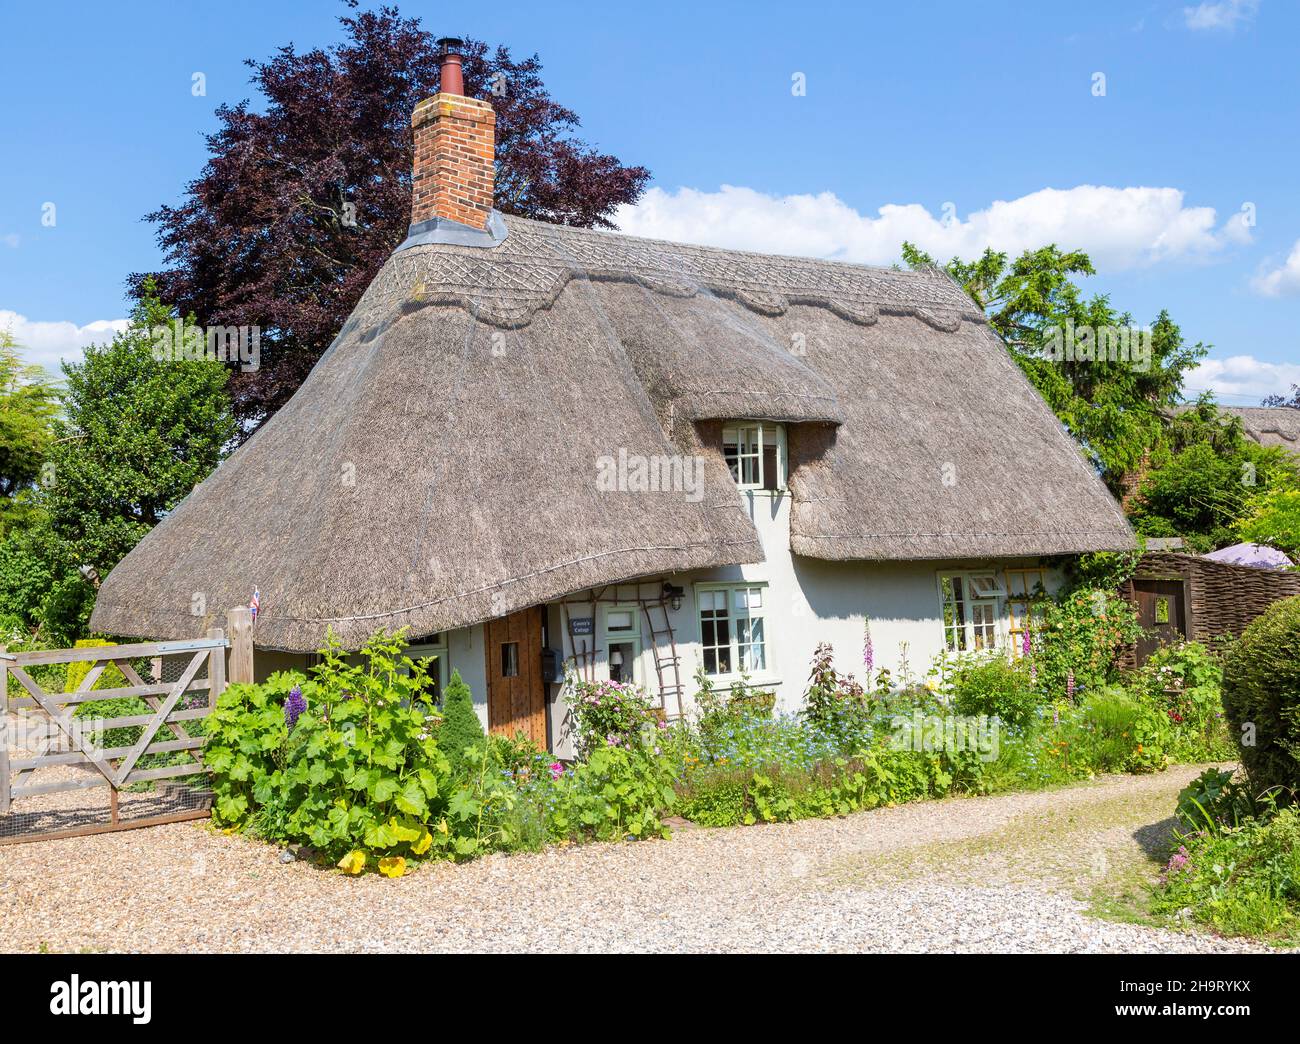 Jolie maison de campagne historique au toit de chaume dans le village de Whatfield, Suffolk, Angleterre, Royaume-Uni Banque D'Images